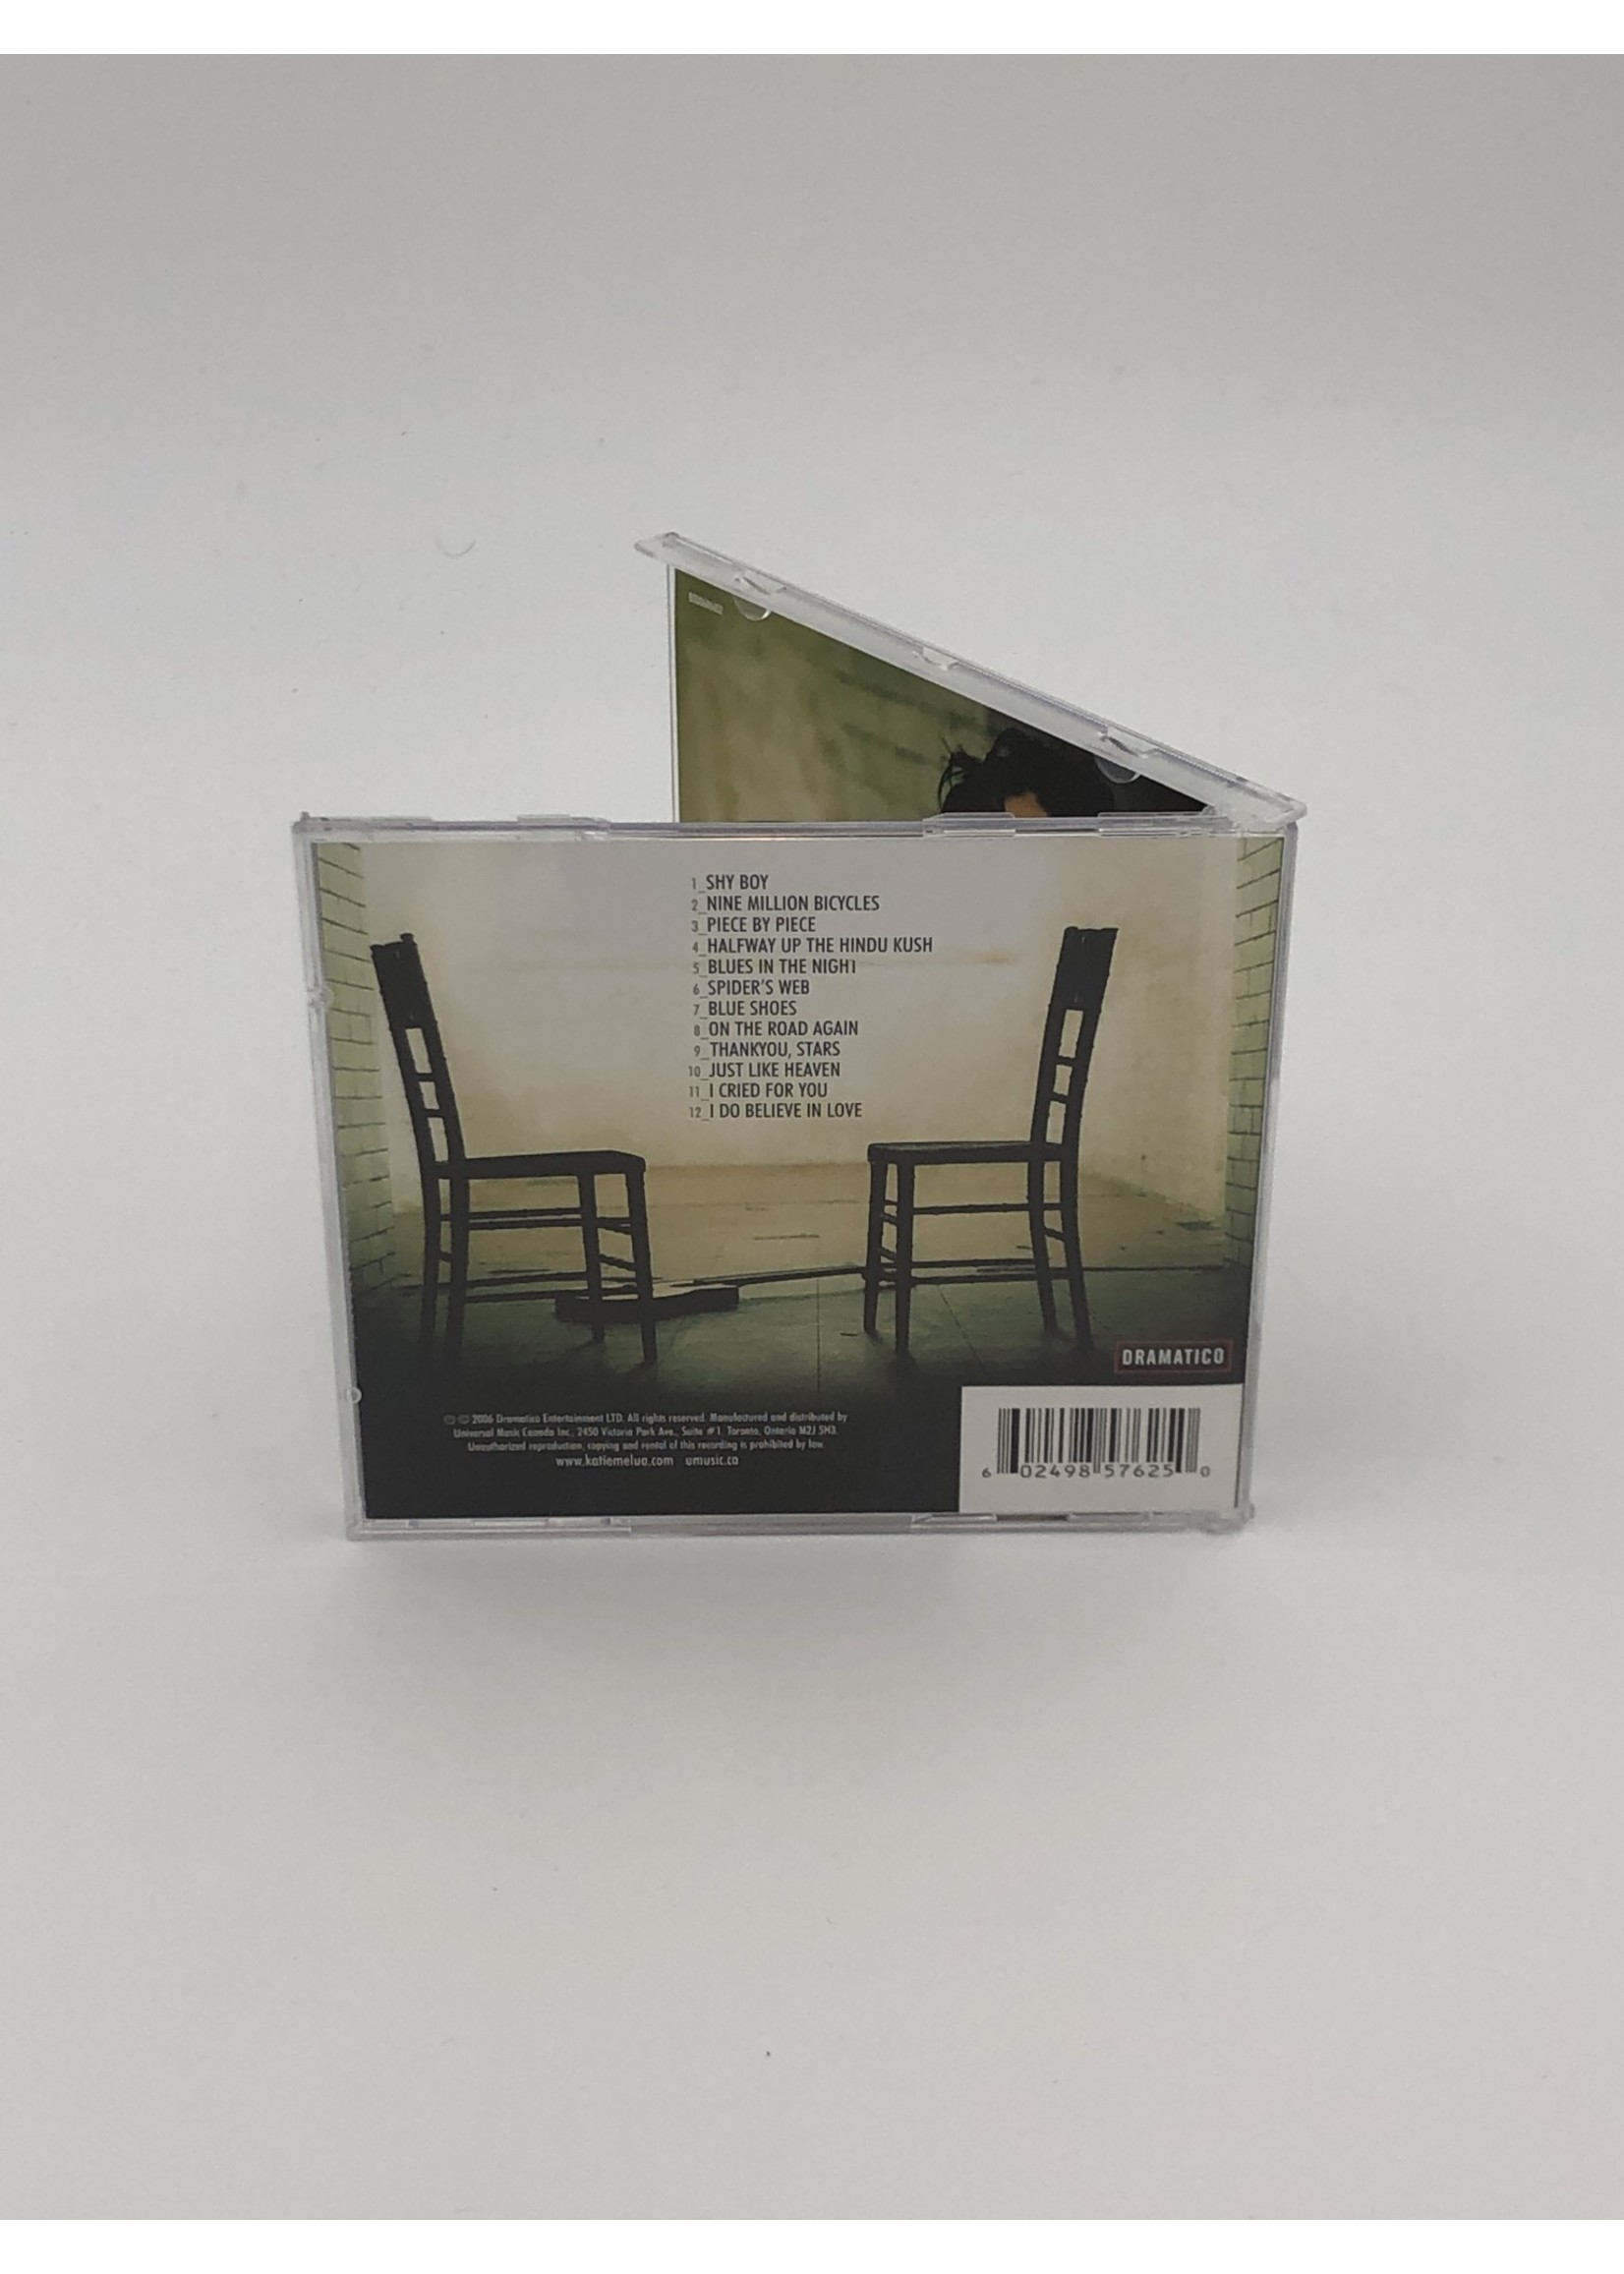 CD Katie Melua: Piece by Piece CD